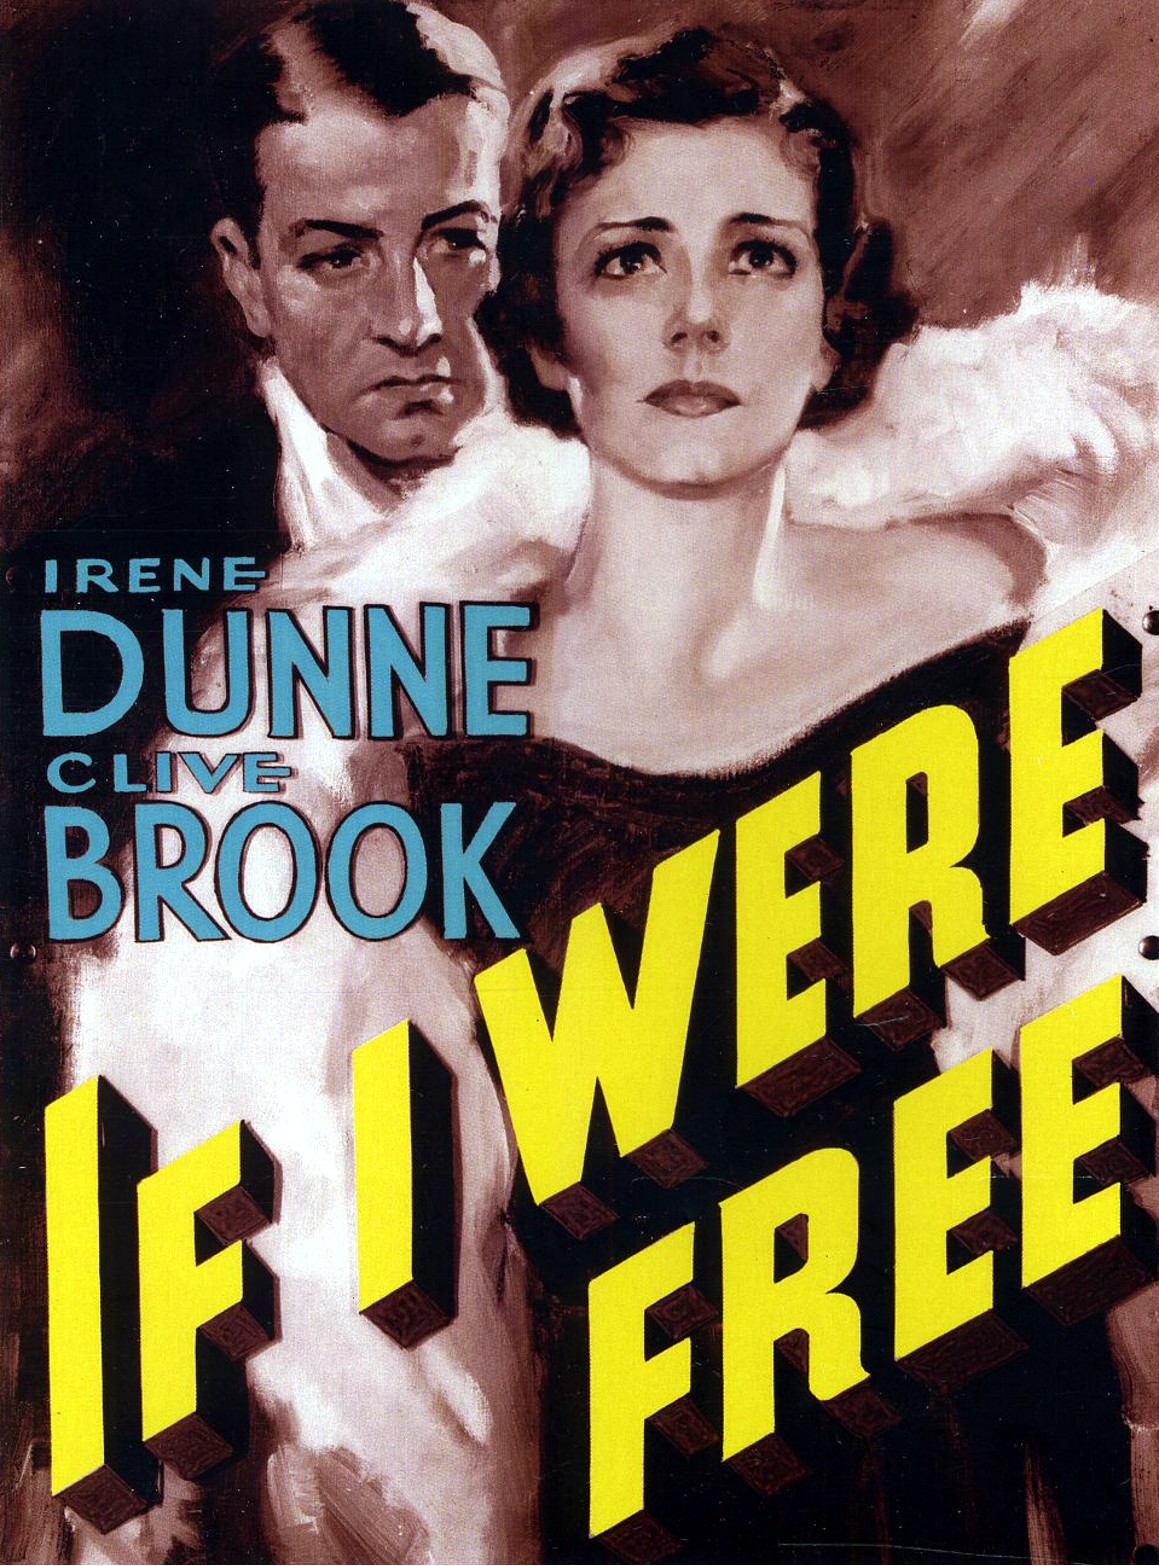 IF I WERE FREE (1933)